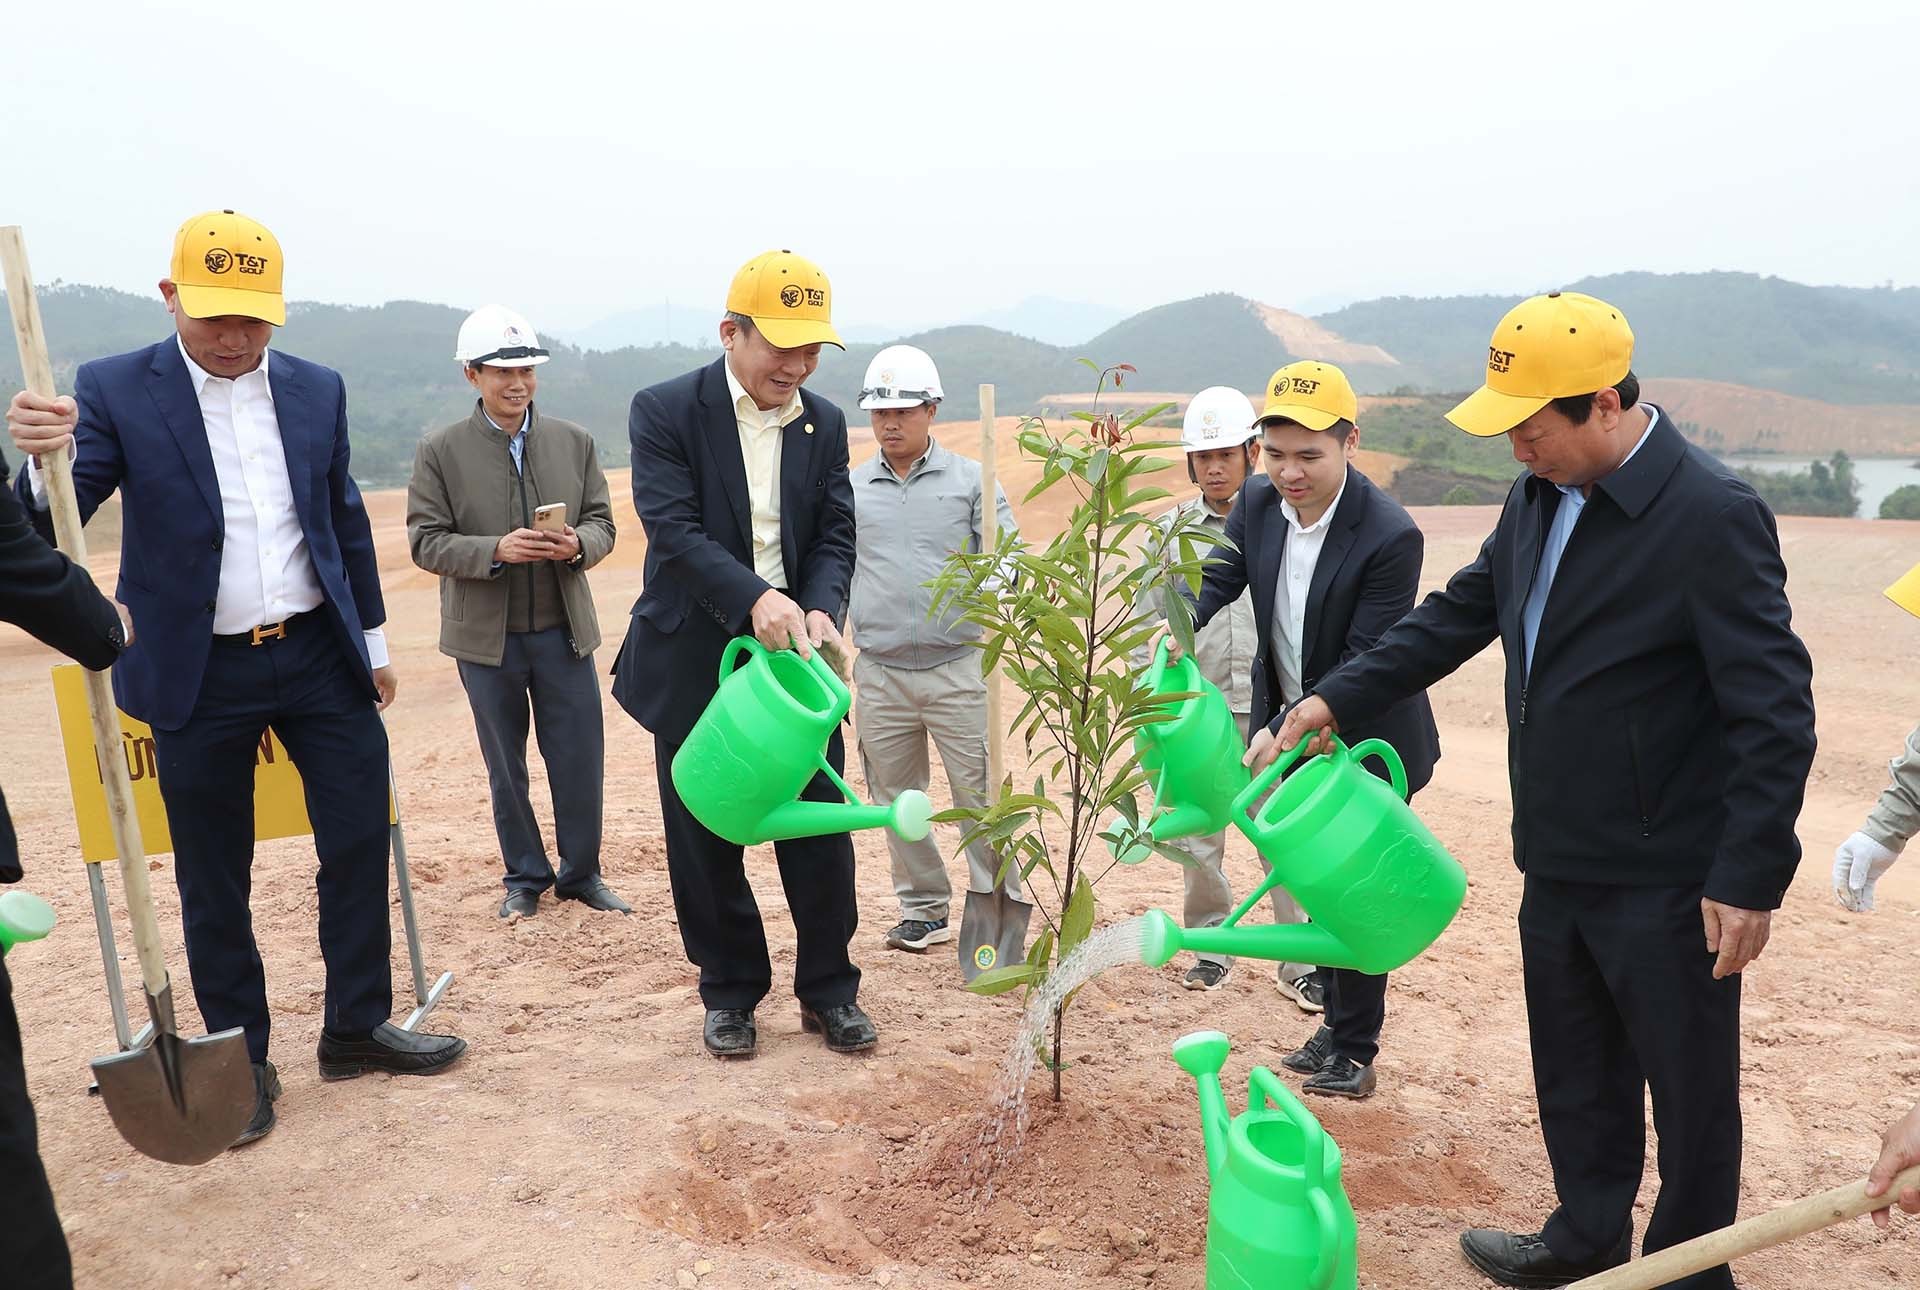 Ông Bùi Văn Quang, Phó Bí thư Tỉnh ủy, Chủ tịch UBND tỉnh Phú Thọ và ông Đỗ Quang Hiển, Chủ tịch Ủy ban Chiến lược Tập đoàn T&T Group cùng các đại biểu tham gia trồng cây tại dự án.